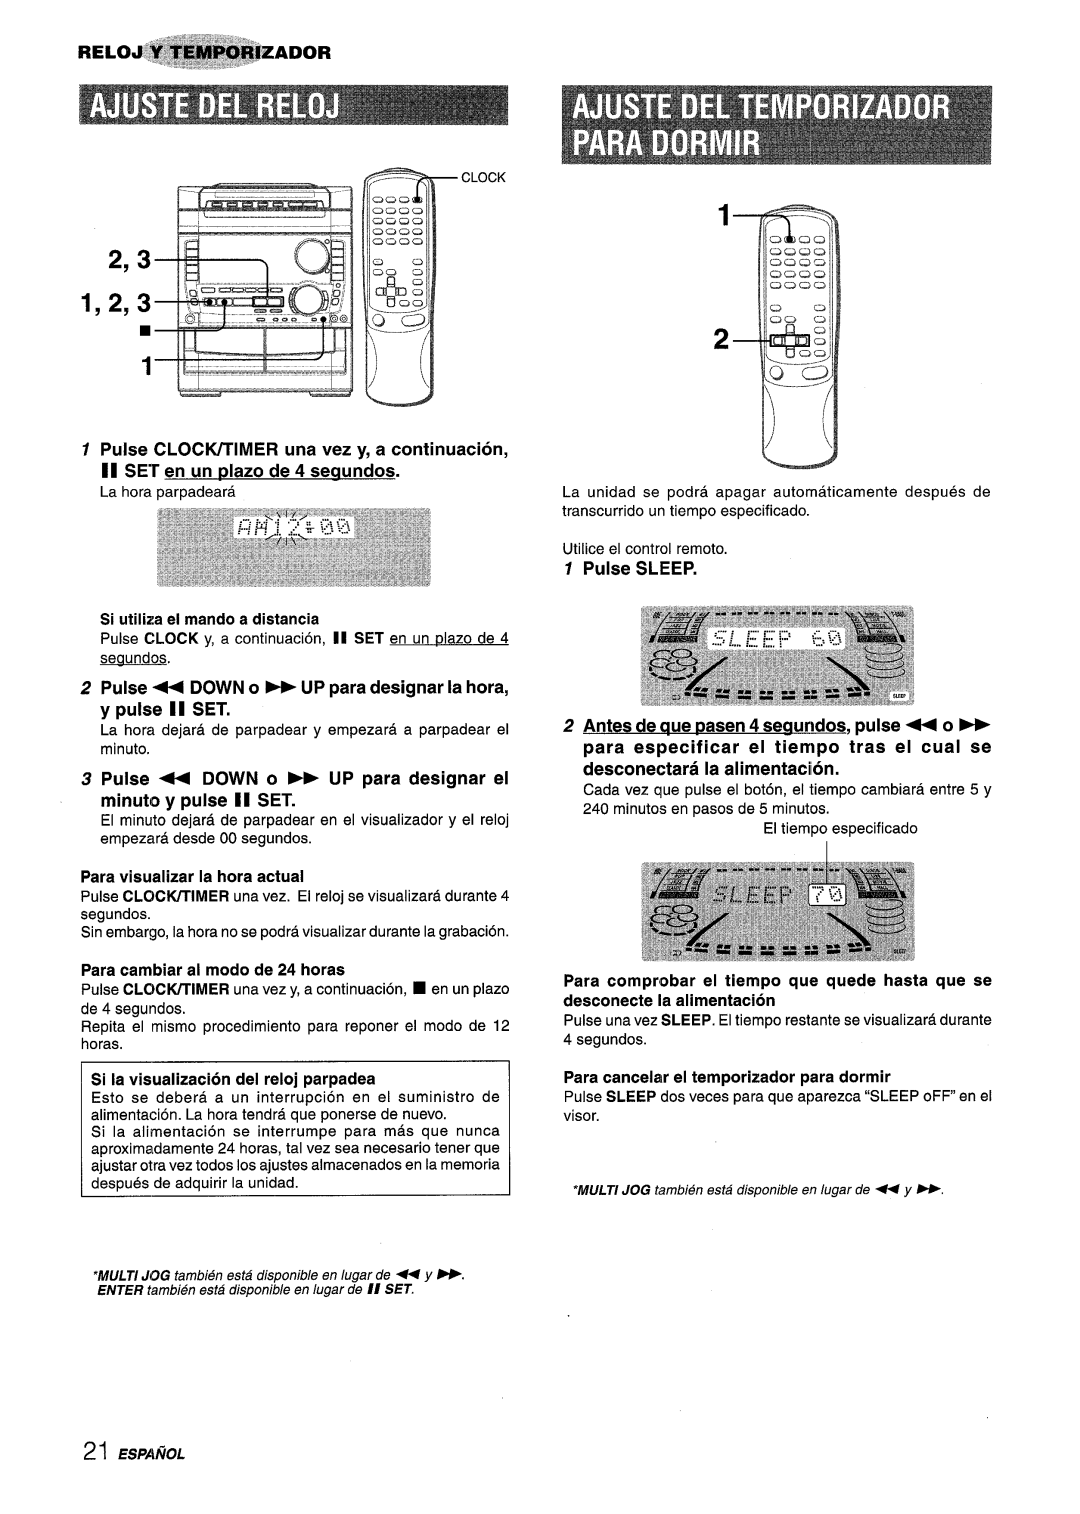 Sony NSX-A959 manual Pulse CLOCIVTIMER una vez y, a continuation, II SET en un plazo de 4 segundos, Clock 